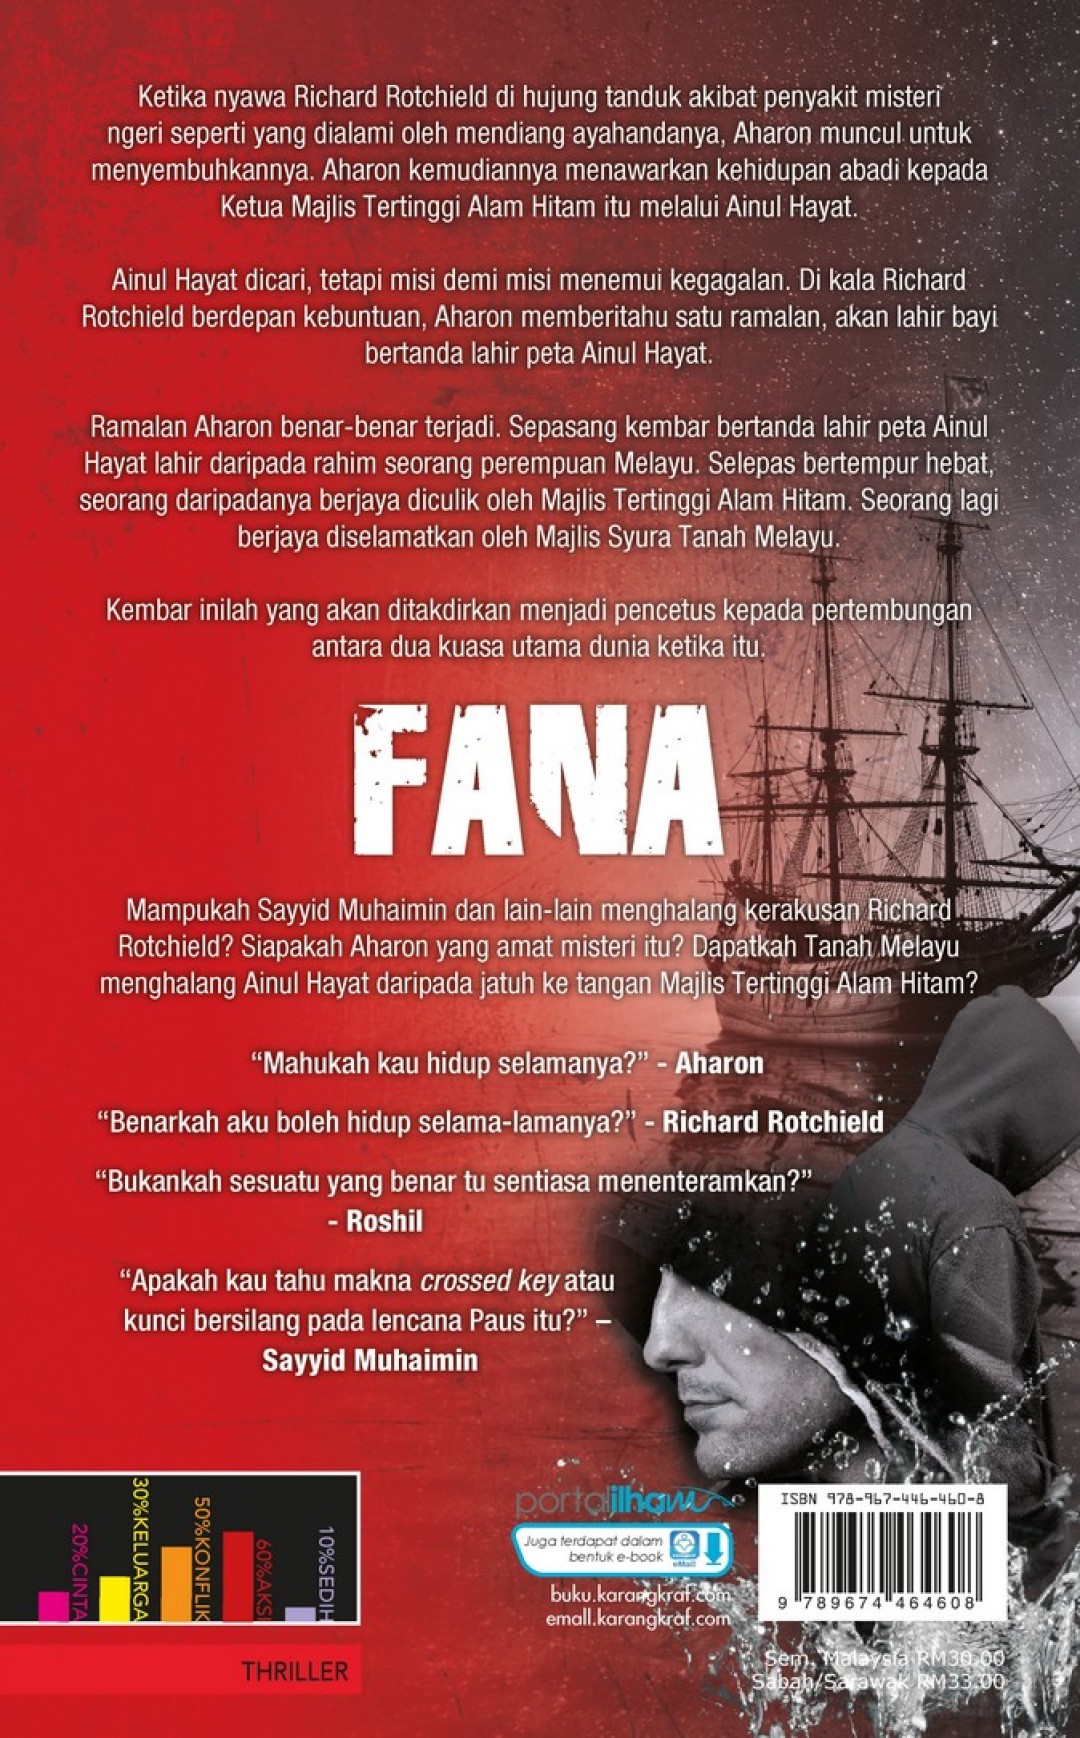 Fana (Thriller Solo) - Fitri Hussin